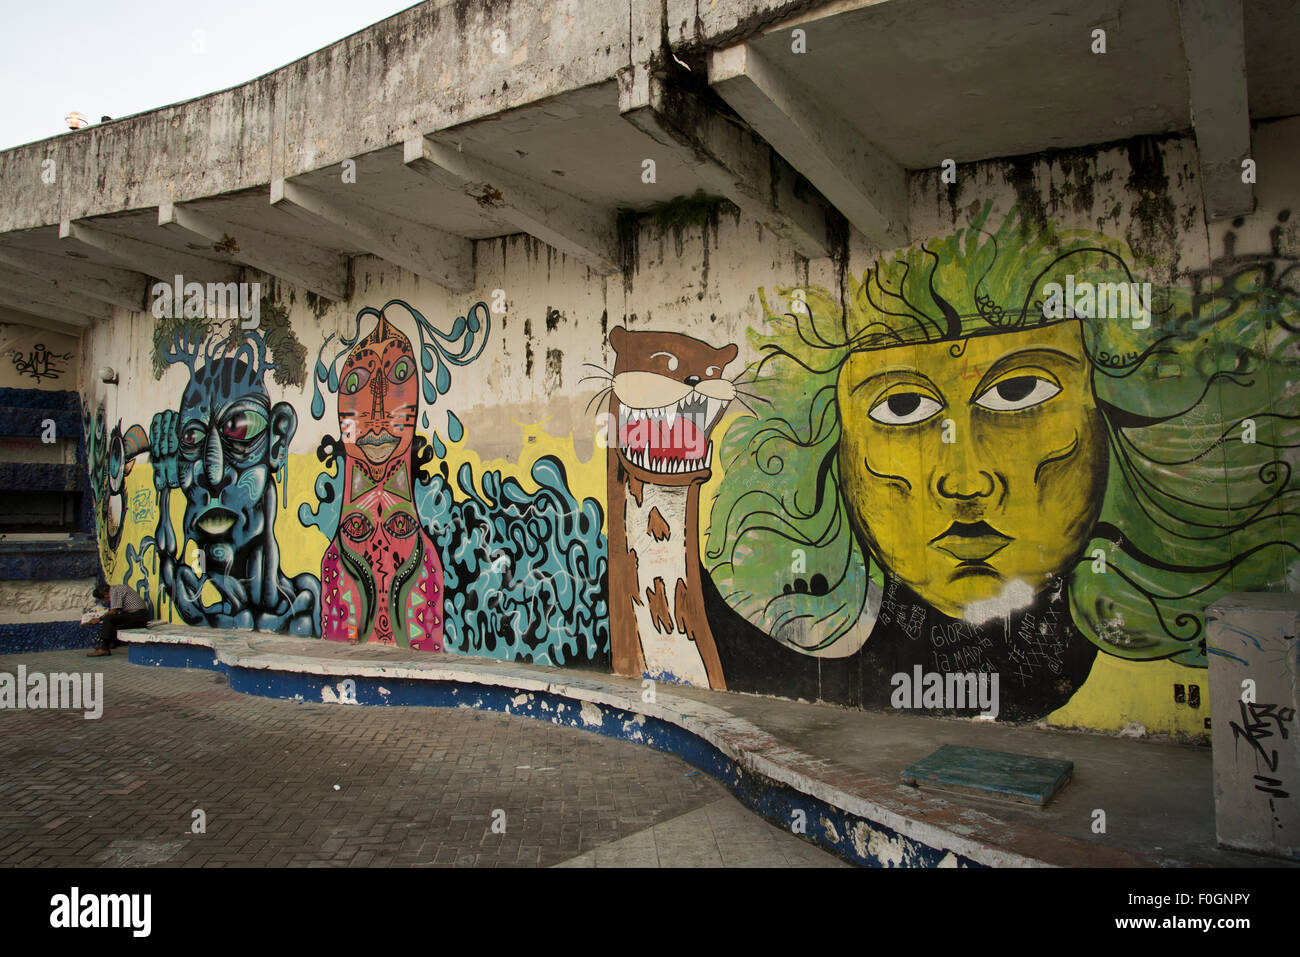 Doté d''un graffiti amazonienne loutre géante, Iquitos, Pérou Banque D'Images